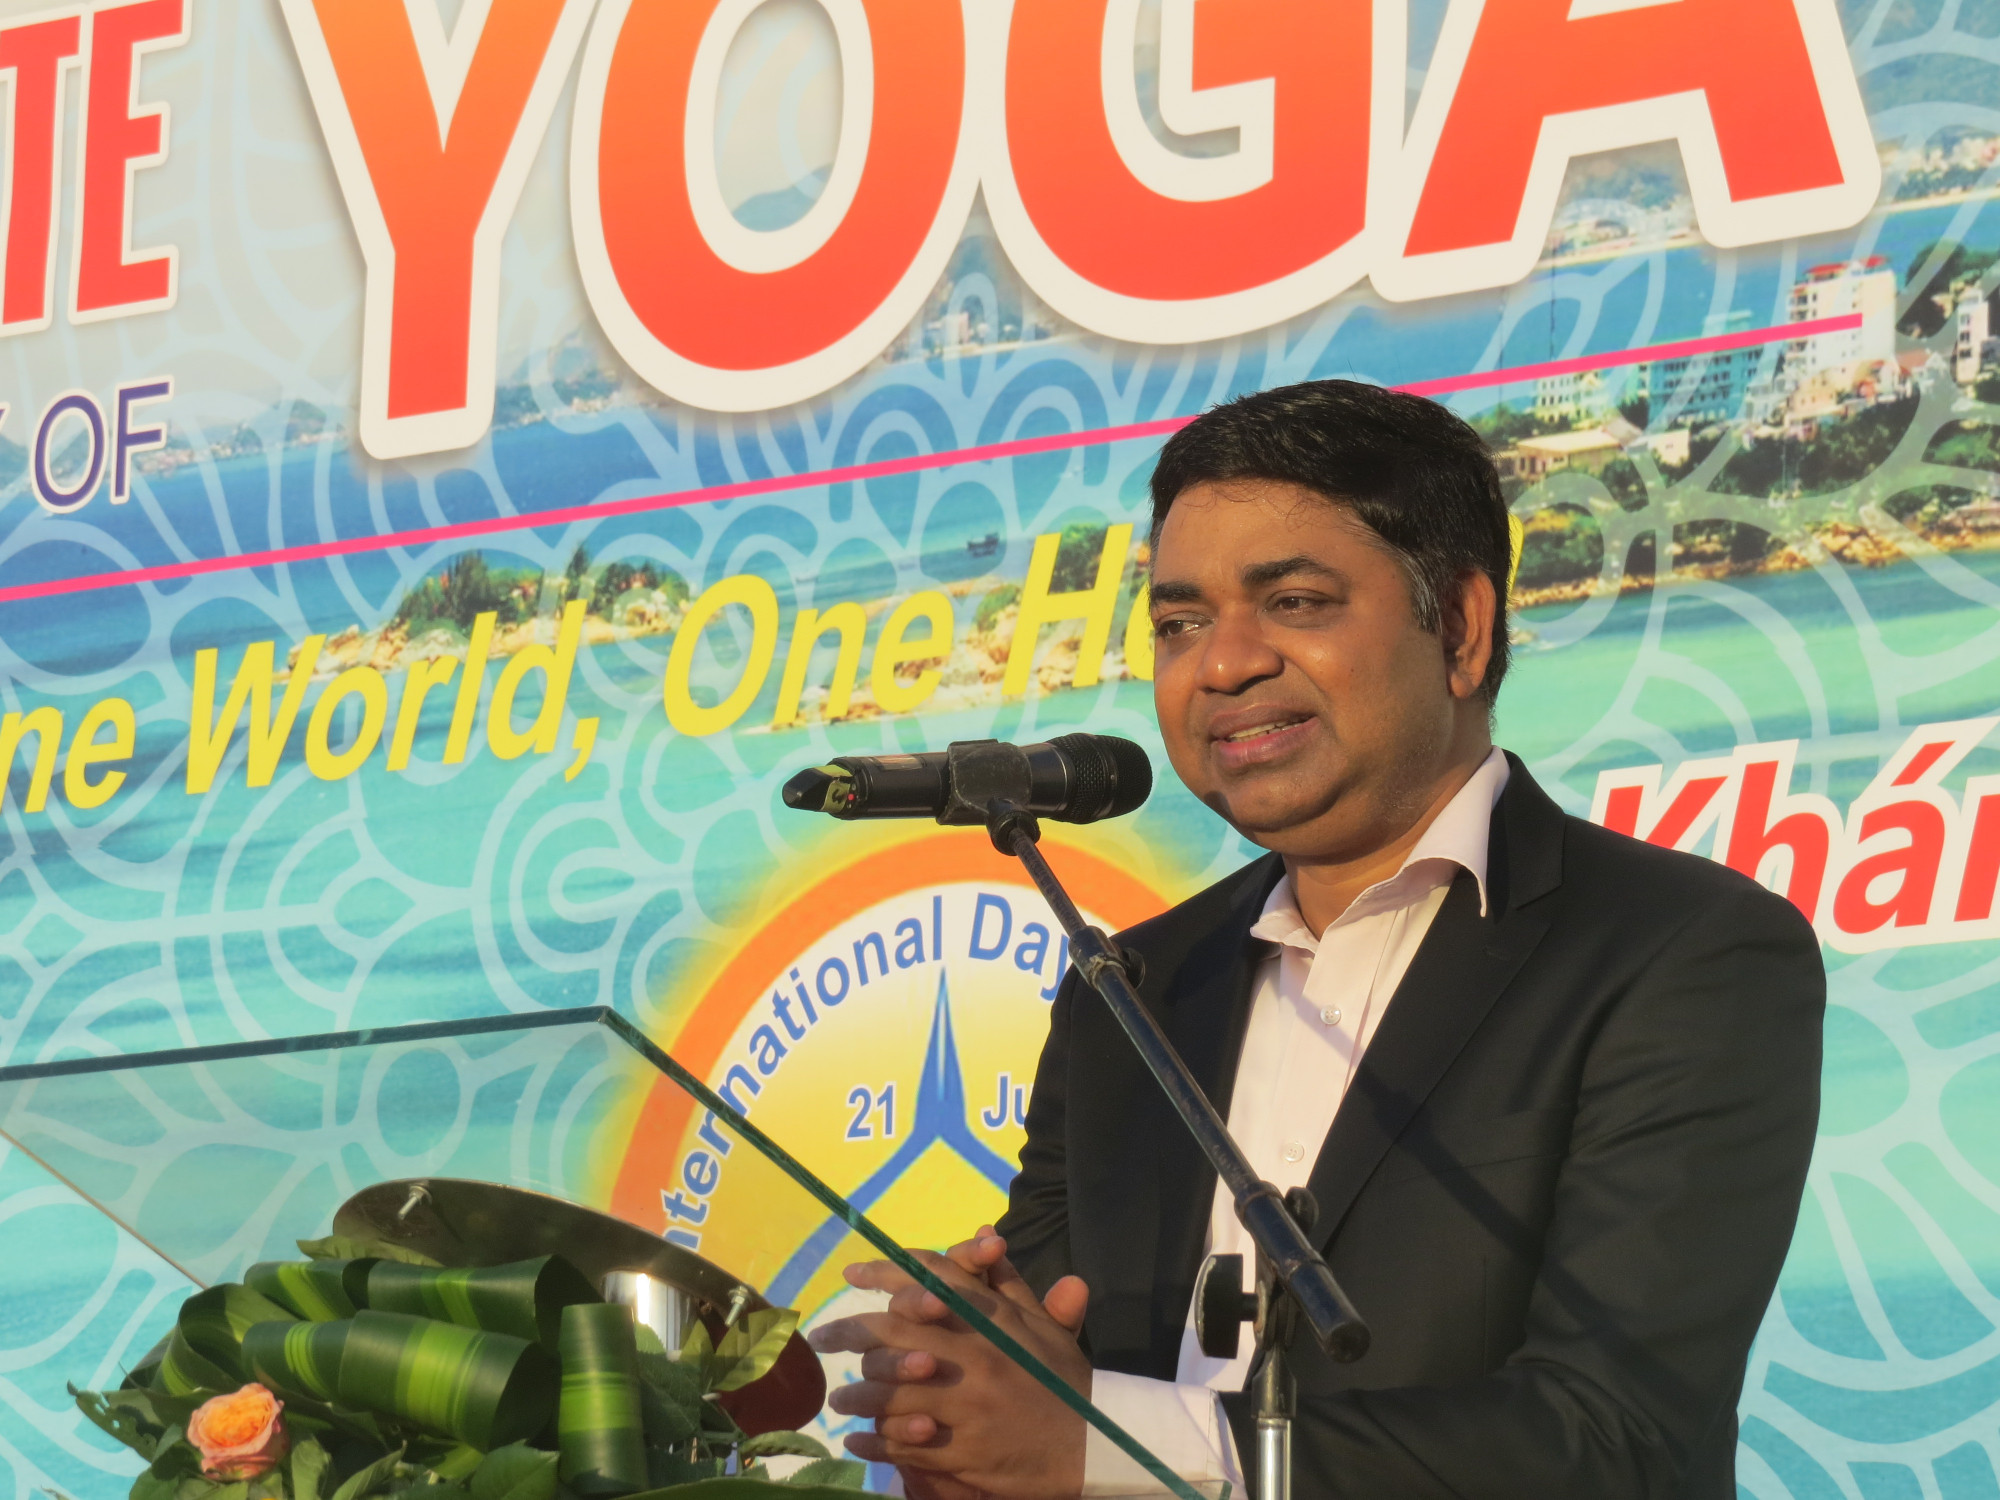 ông Madan Mohan Sethi, Tổng lãnh sự Ấn Độ tại TPHCM  cảm ơn sự đồng hành của tỉnh Khánh Hòa trong tổ chức các sự kiện, hoạt động kỷ niệm Ngày Quốc tế Yoga. Ông cũng mong muốn thời gian tới, tỉnh Khánh Hòa tiếp tục đồng hành cùng các cơ quan, đơn vị của Ấn Độ trong tổ chức tập luyện bộ môn yoga nói riêng và trong hợp tác trong các lĩnh vực  văn hoá, du lịch, thương mại…